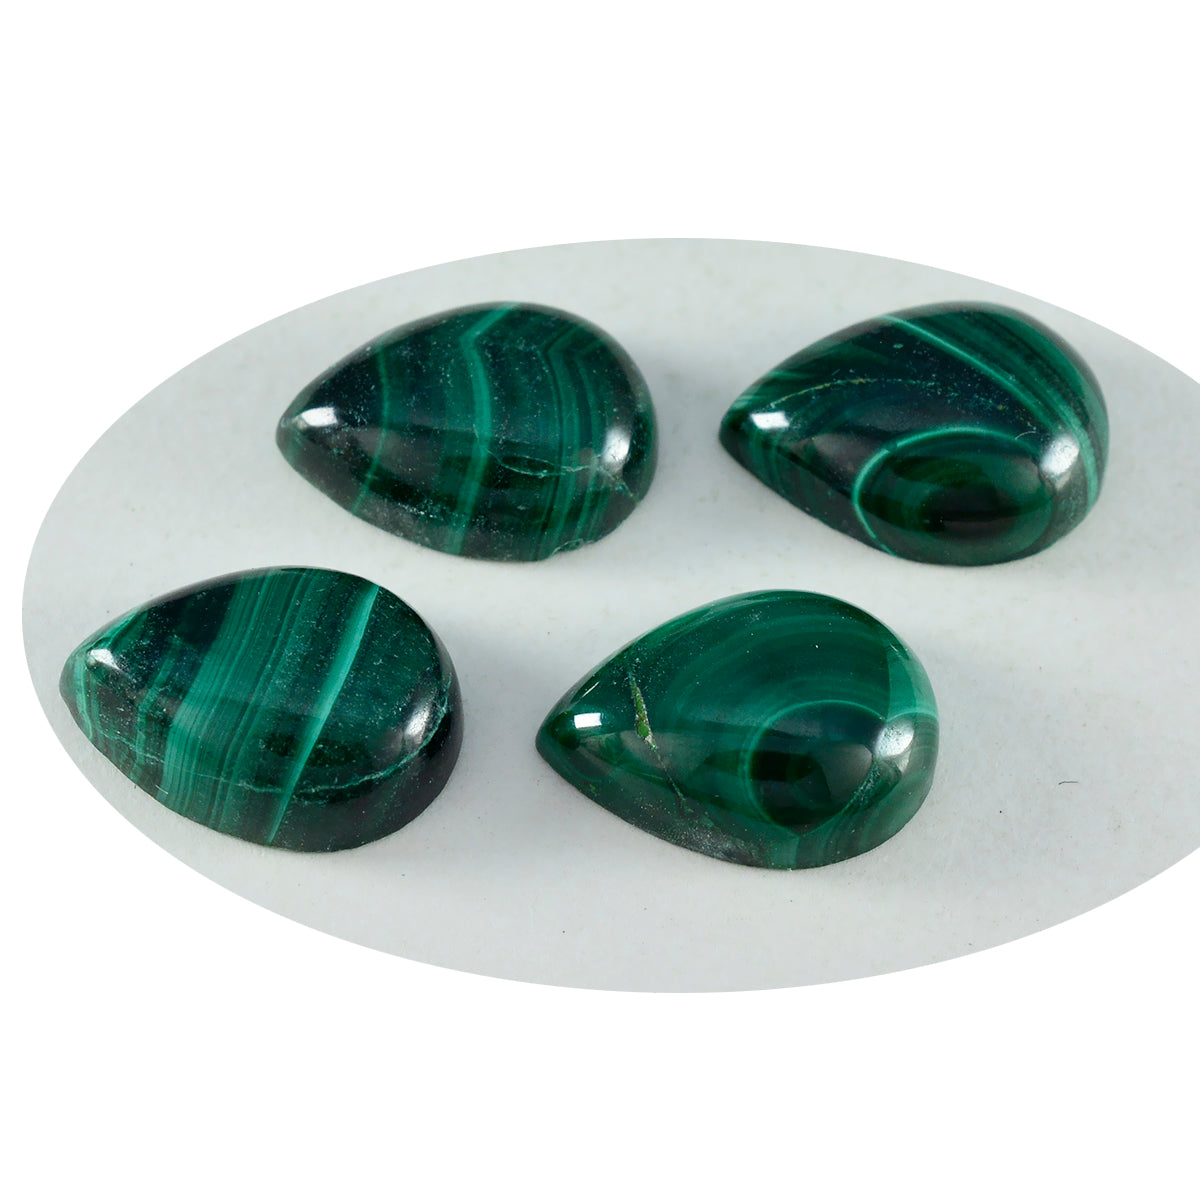 riyogems 1pc cabochon di malachite verde 10x14 mm forma di pera pietra preziosa sfusa di qualità attraente